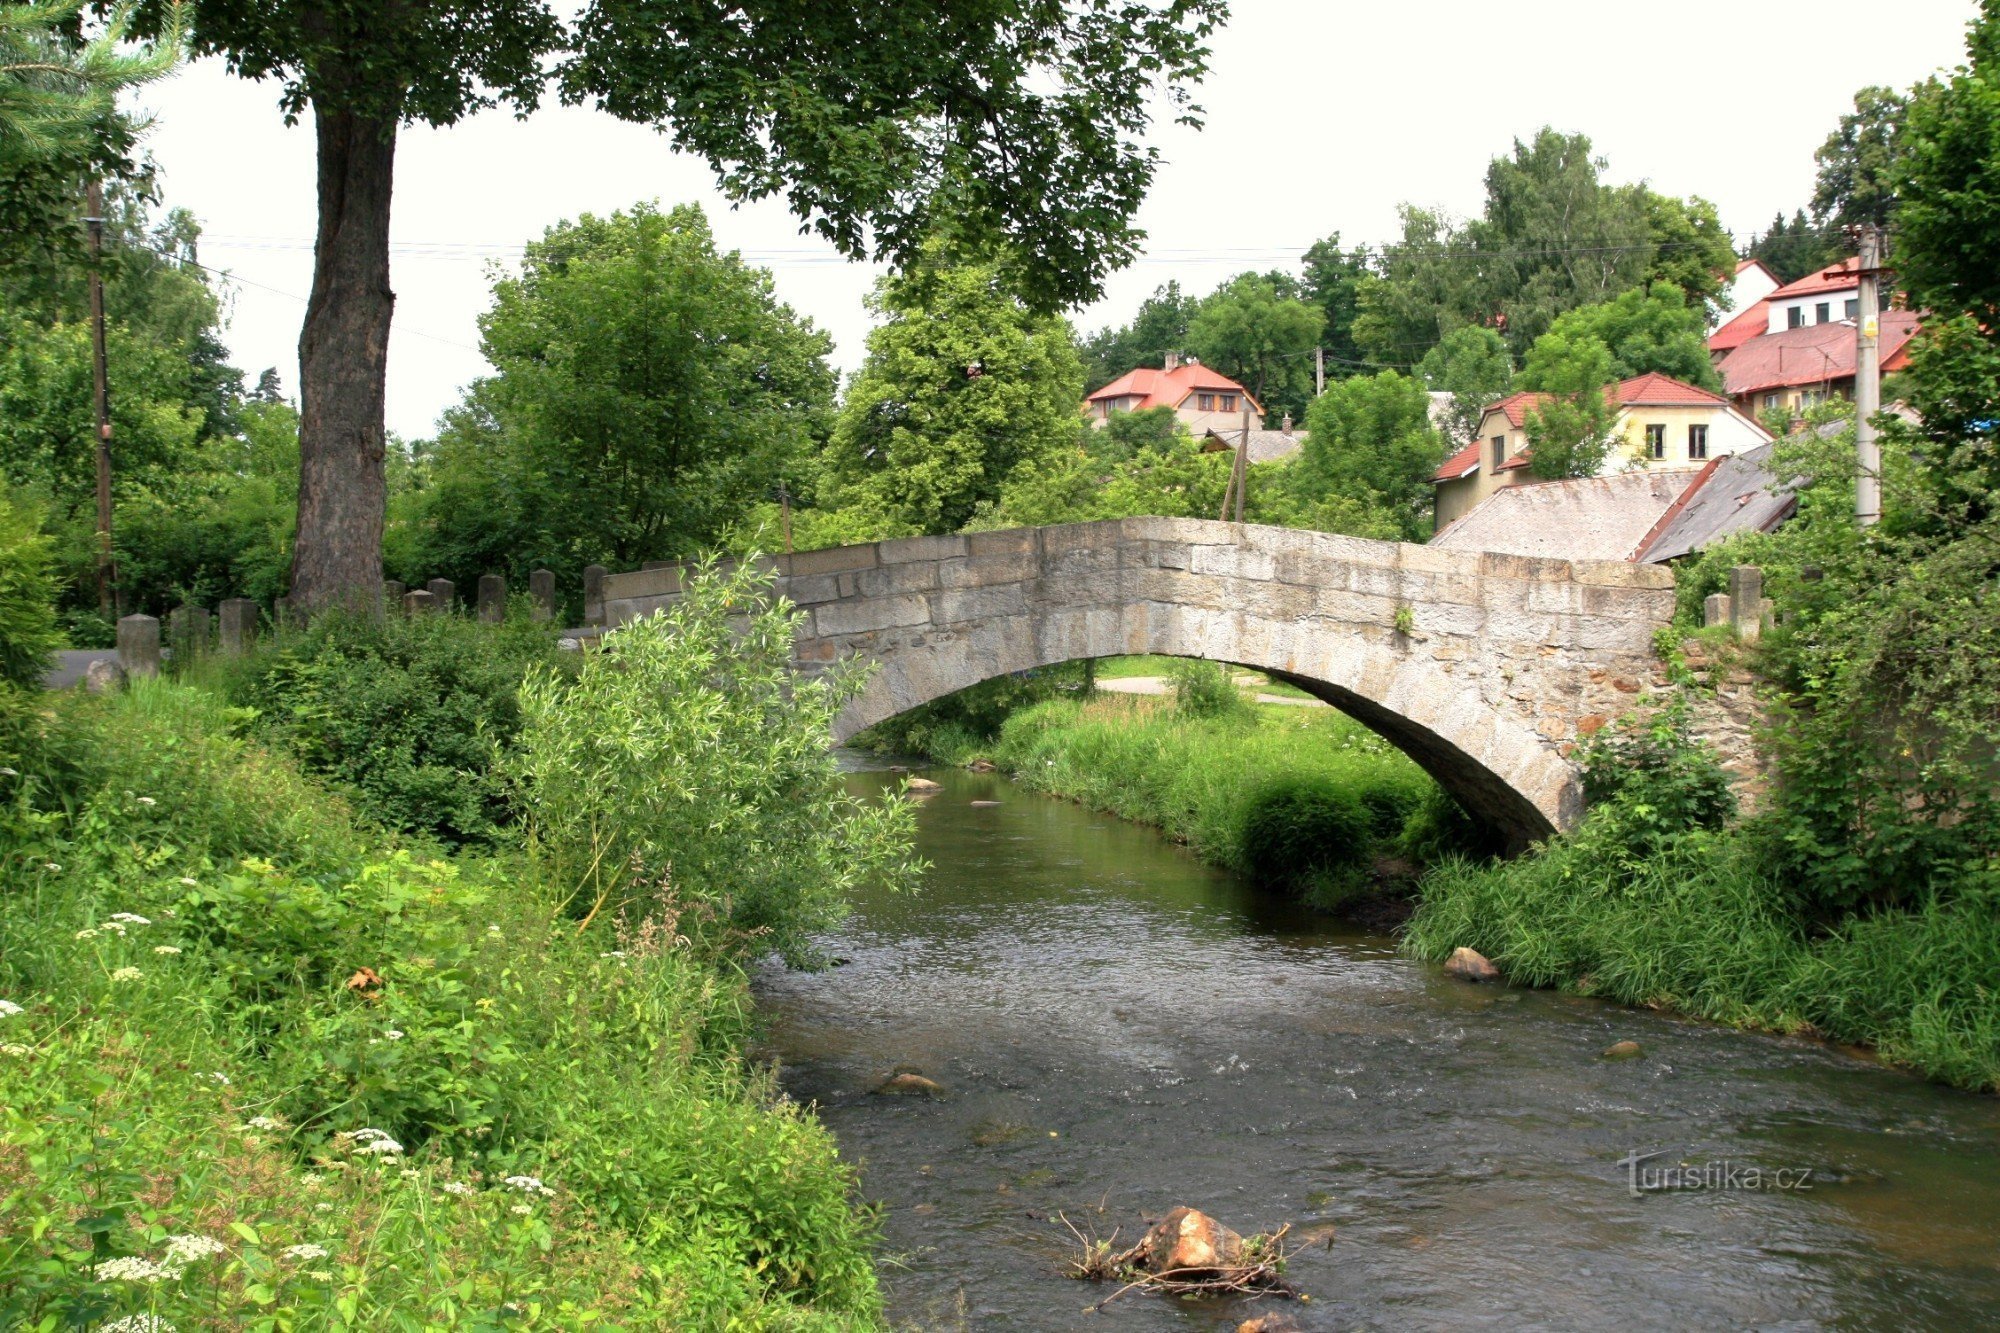 Hamry nad Sázavou - cây cầu đá lịch sử